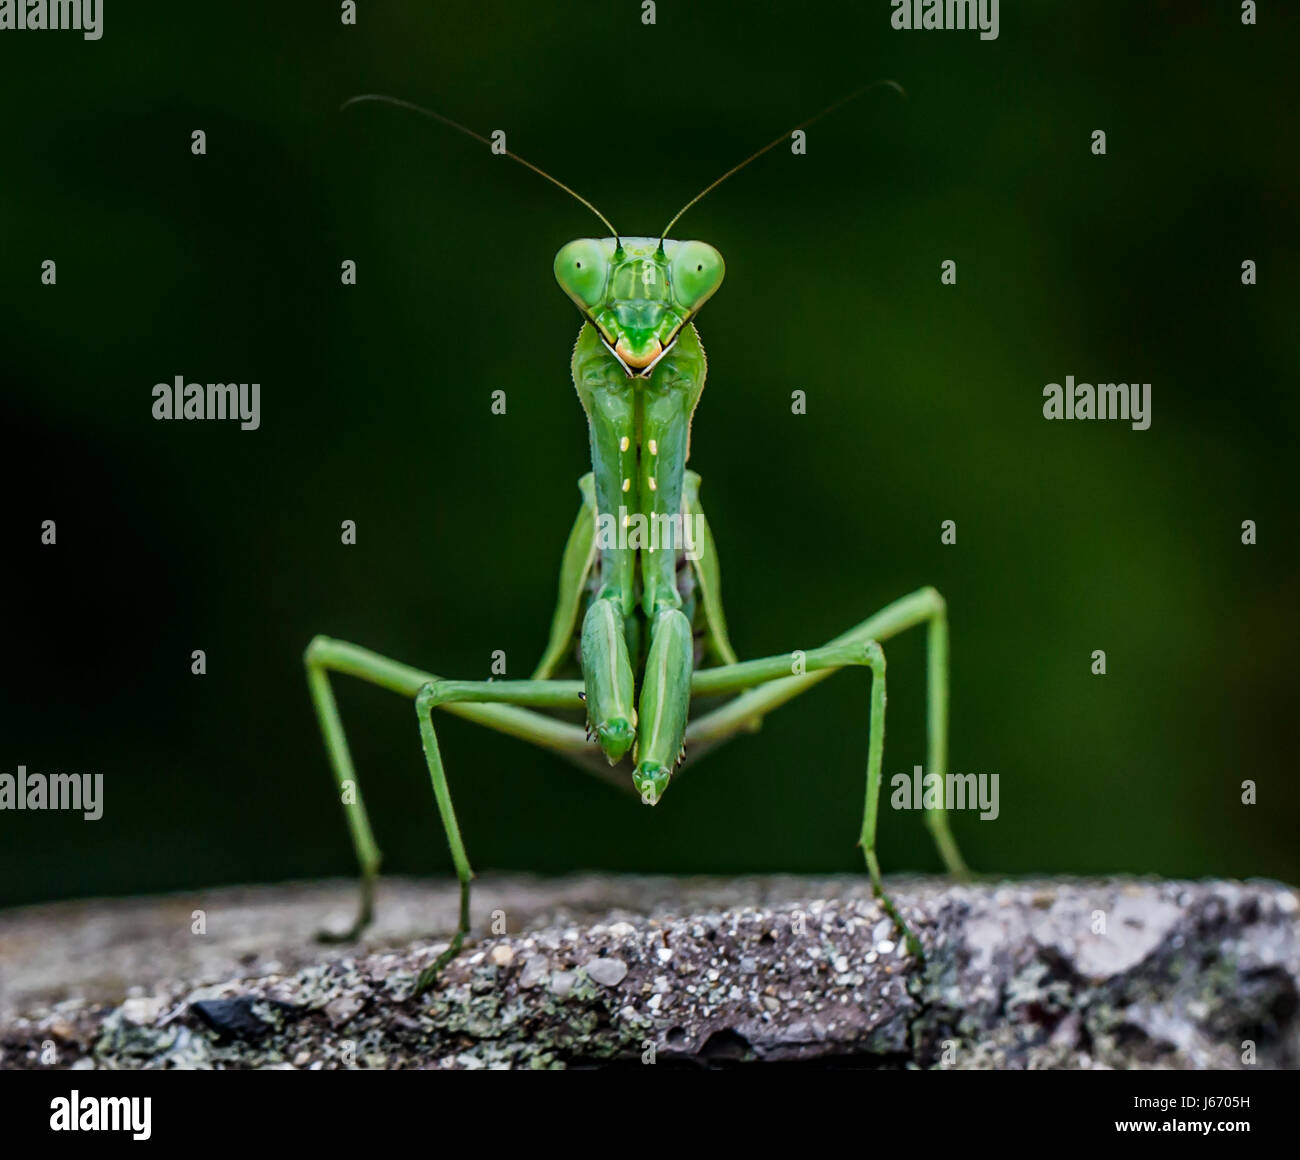 Praying Mantis Stock Photo